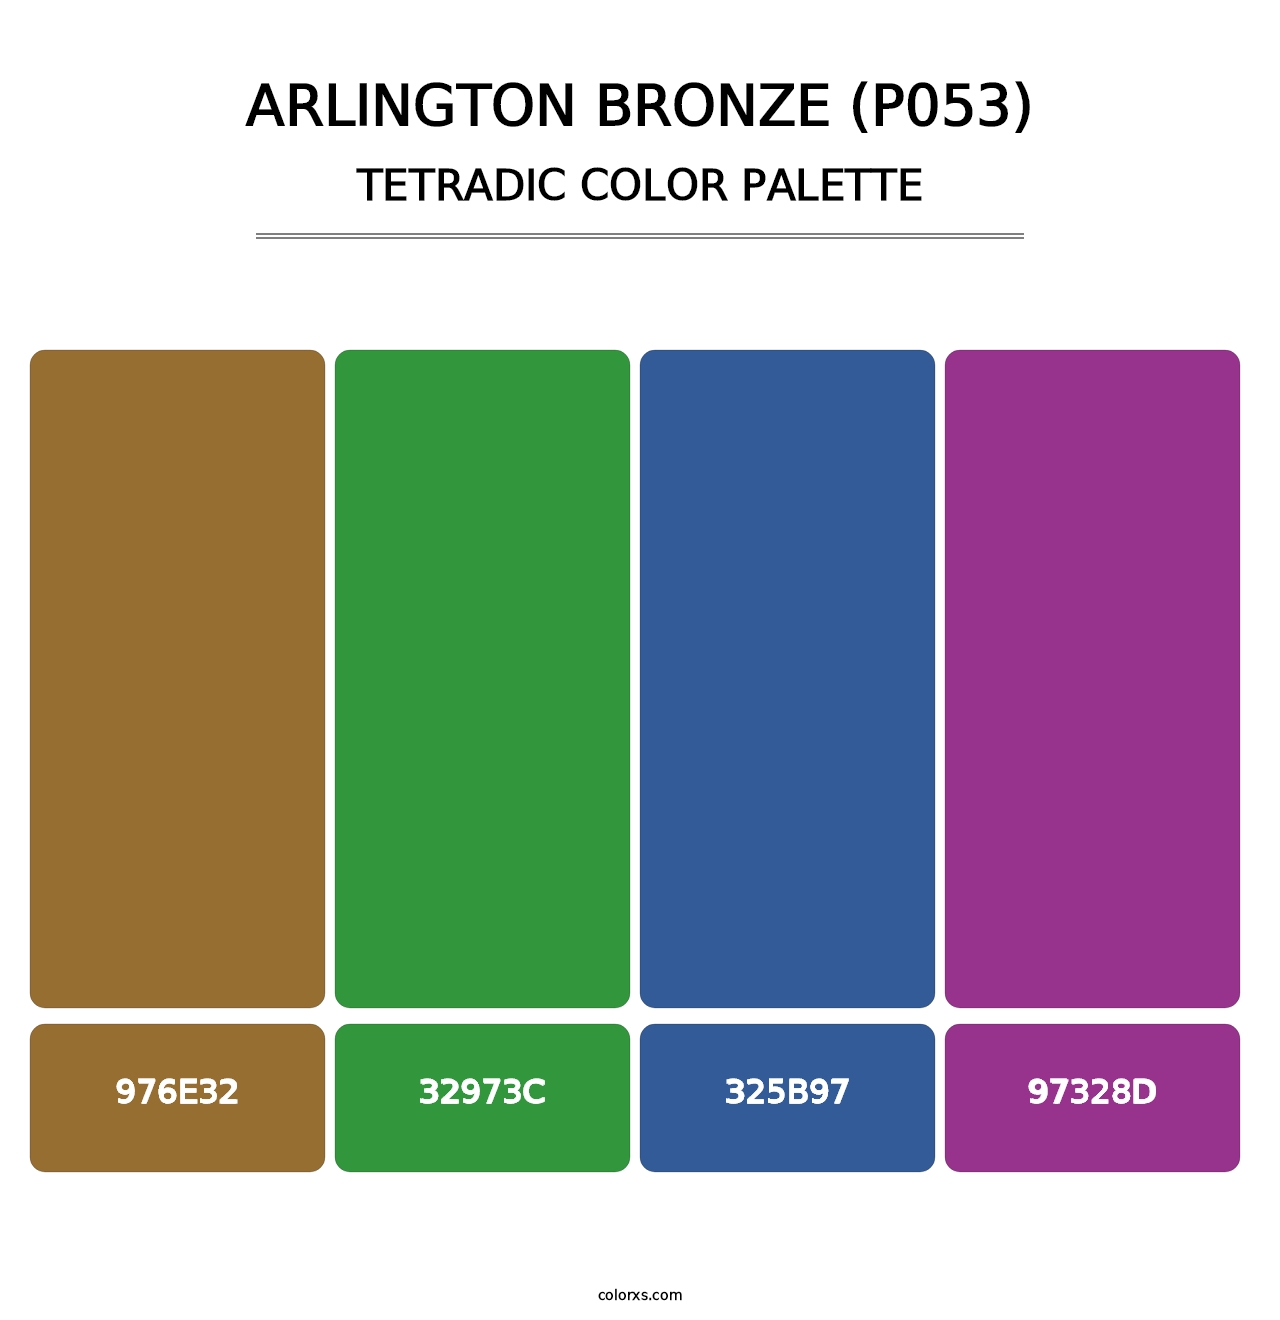 Arlington Bronze (P053) - Tetradic Color Palette